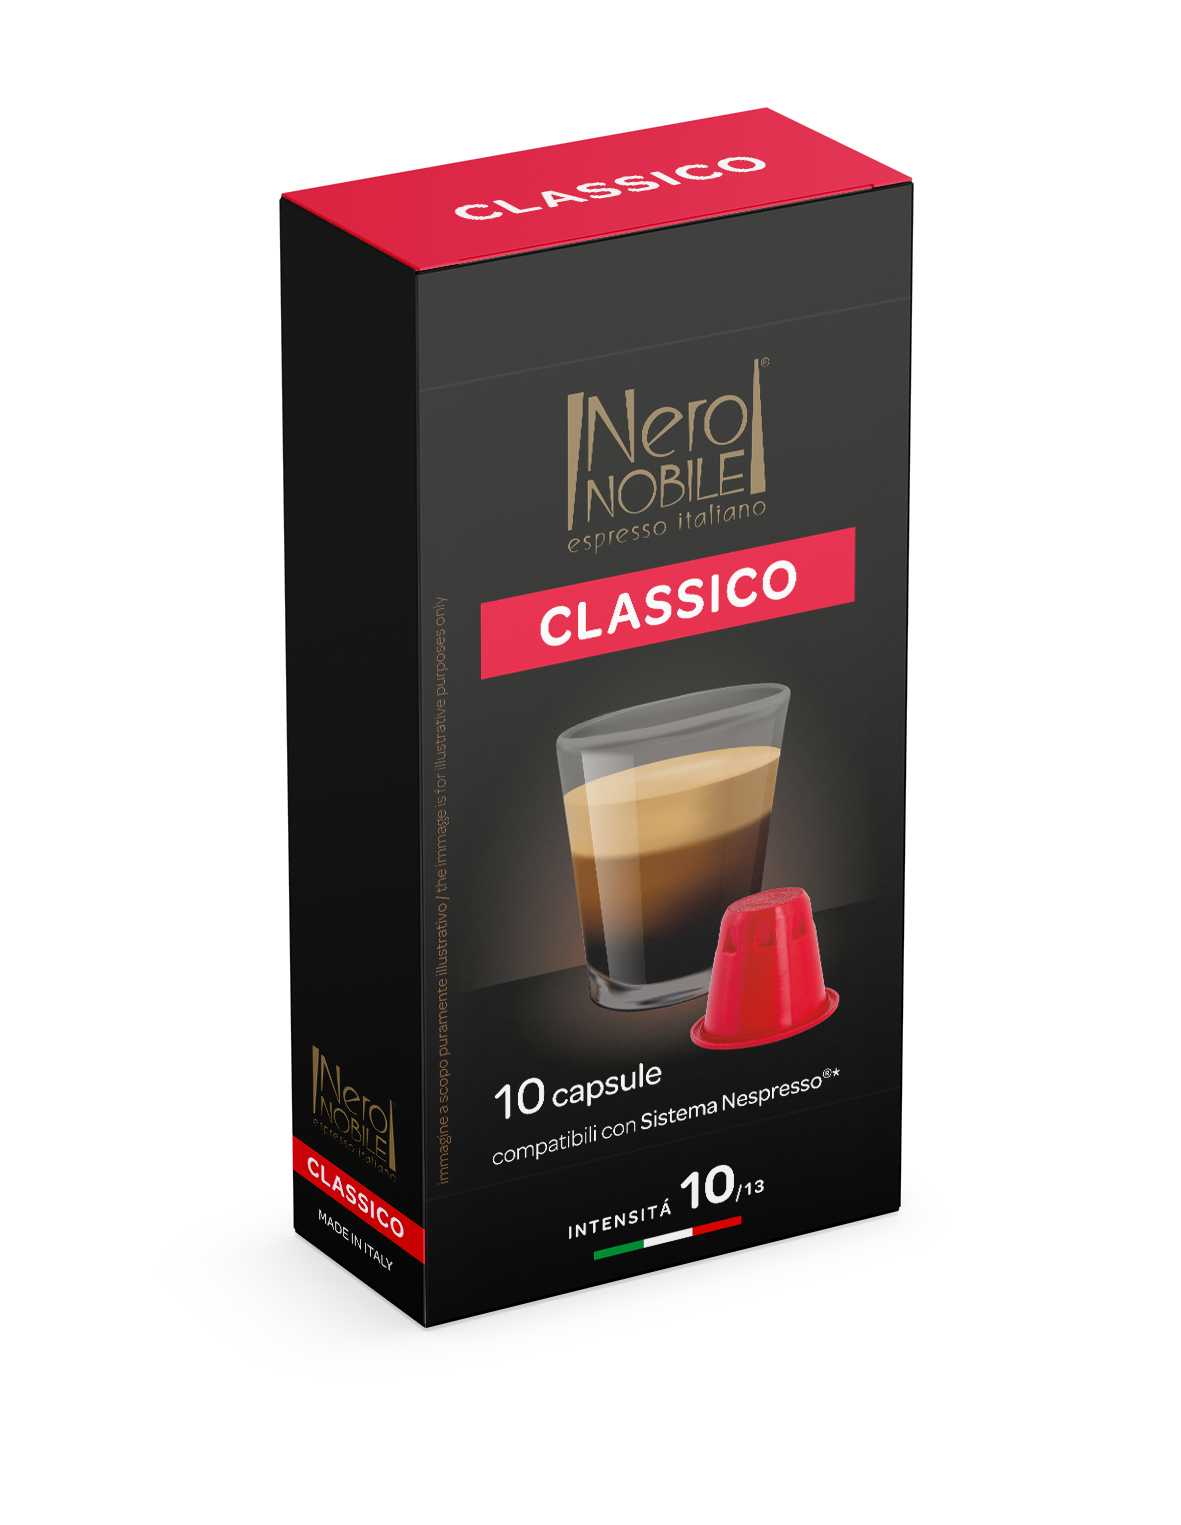 CLASSICO - 10 caps. compatible Nespresso®